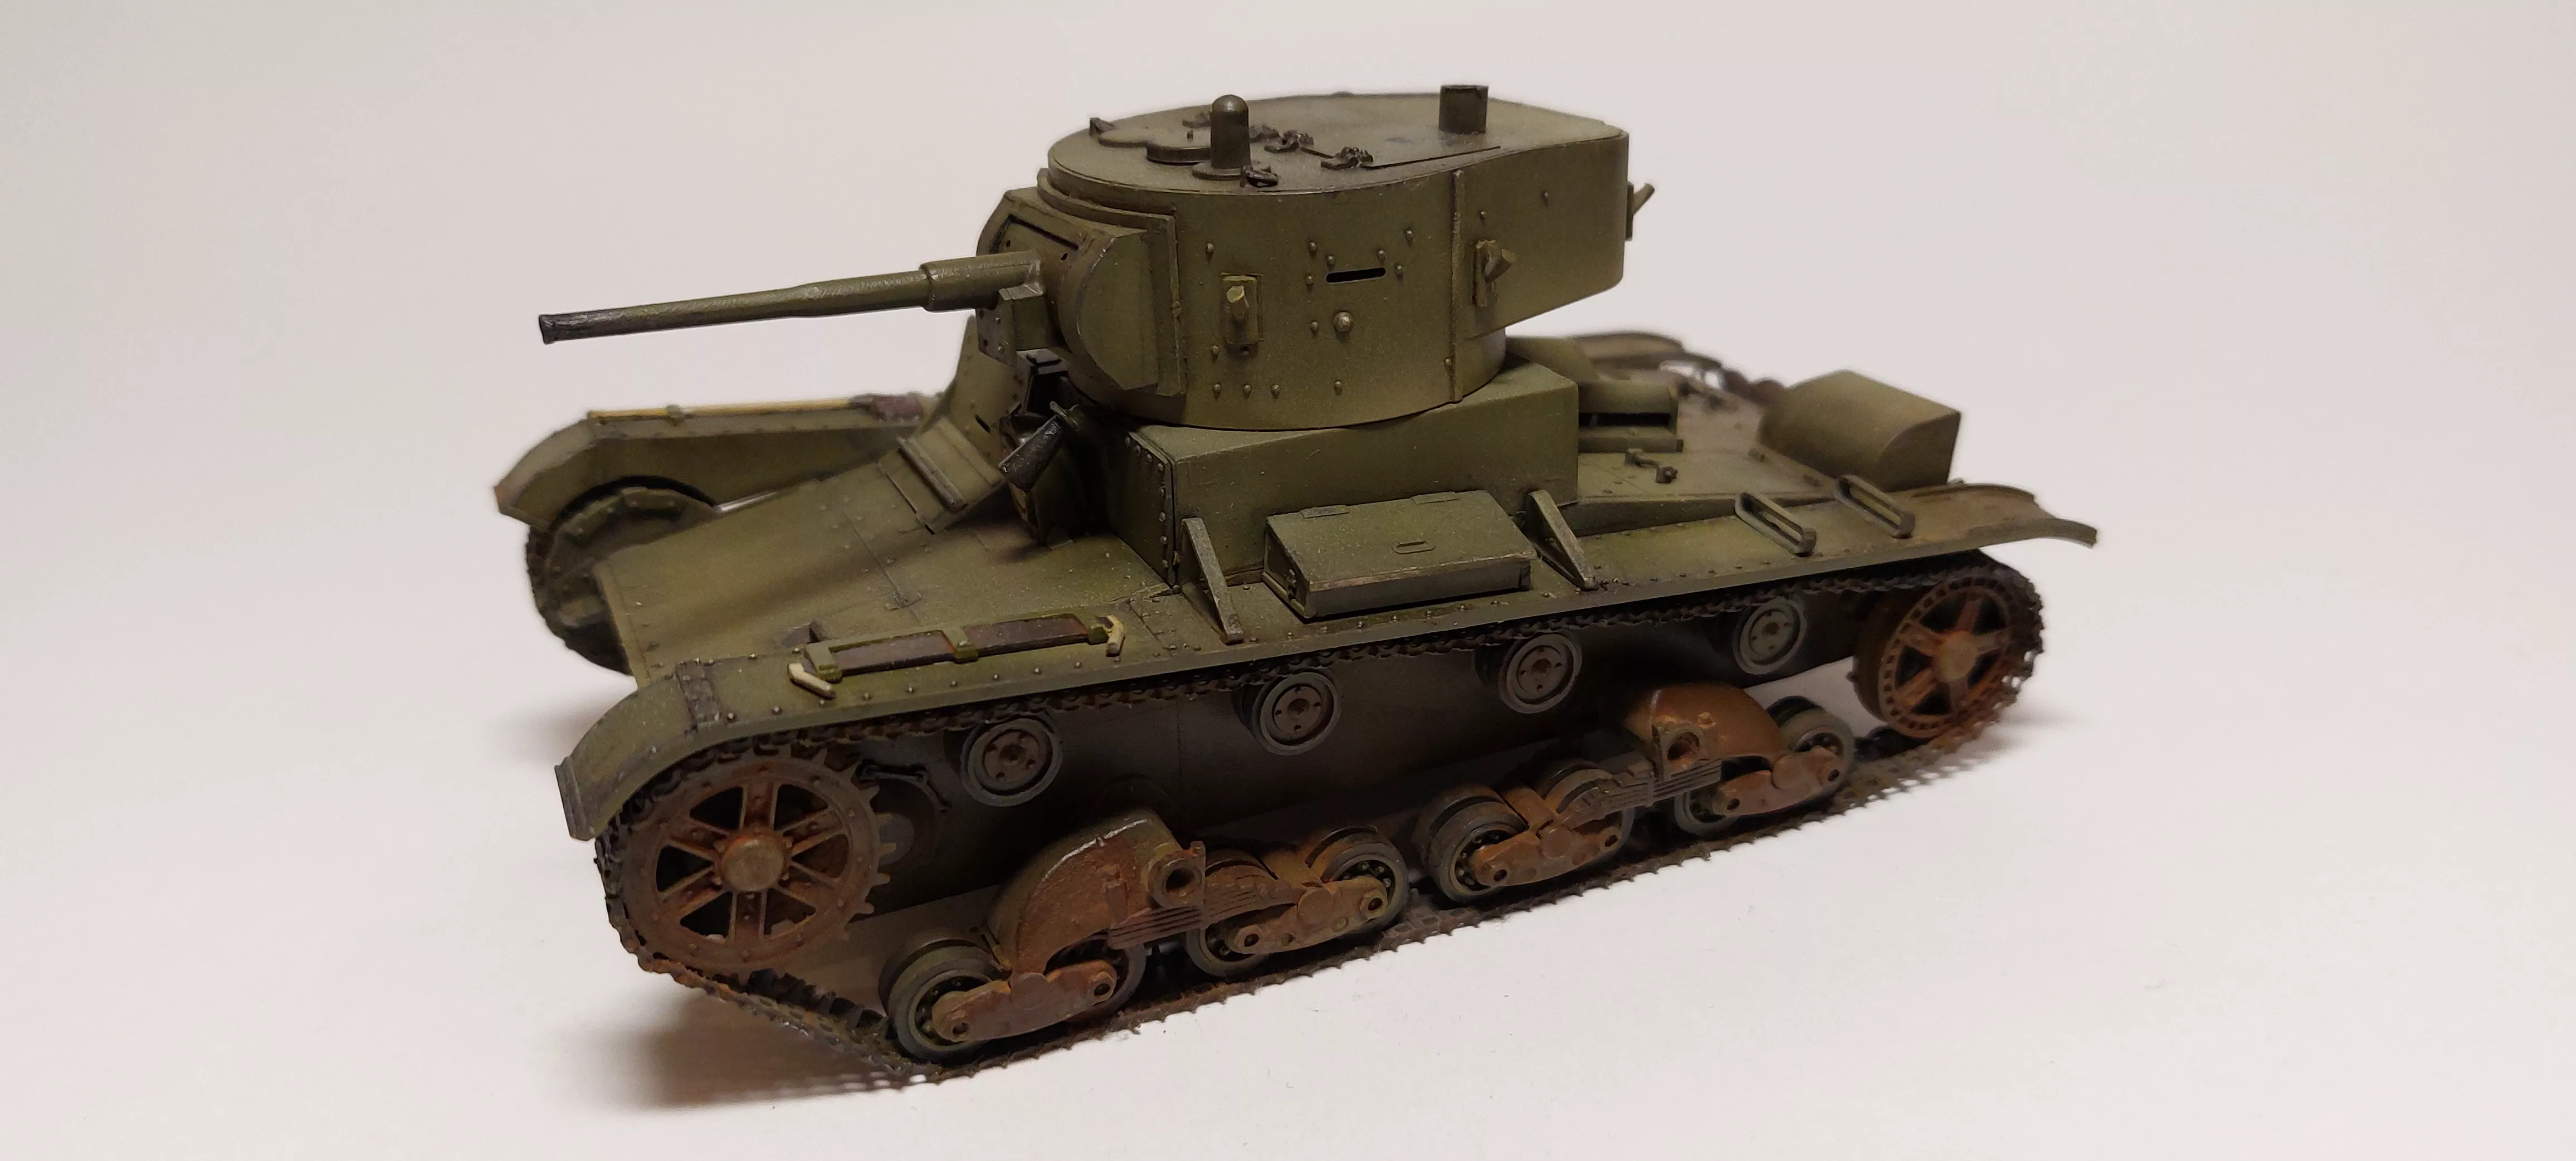 Советский легкий танк Т-26 (обр. 1933 г.) с клеем, кисточкой и красками.